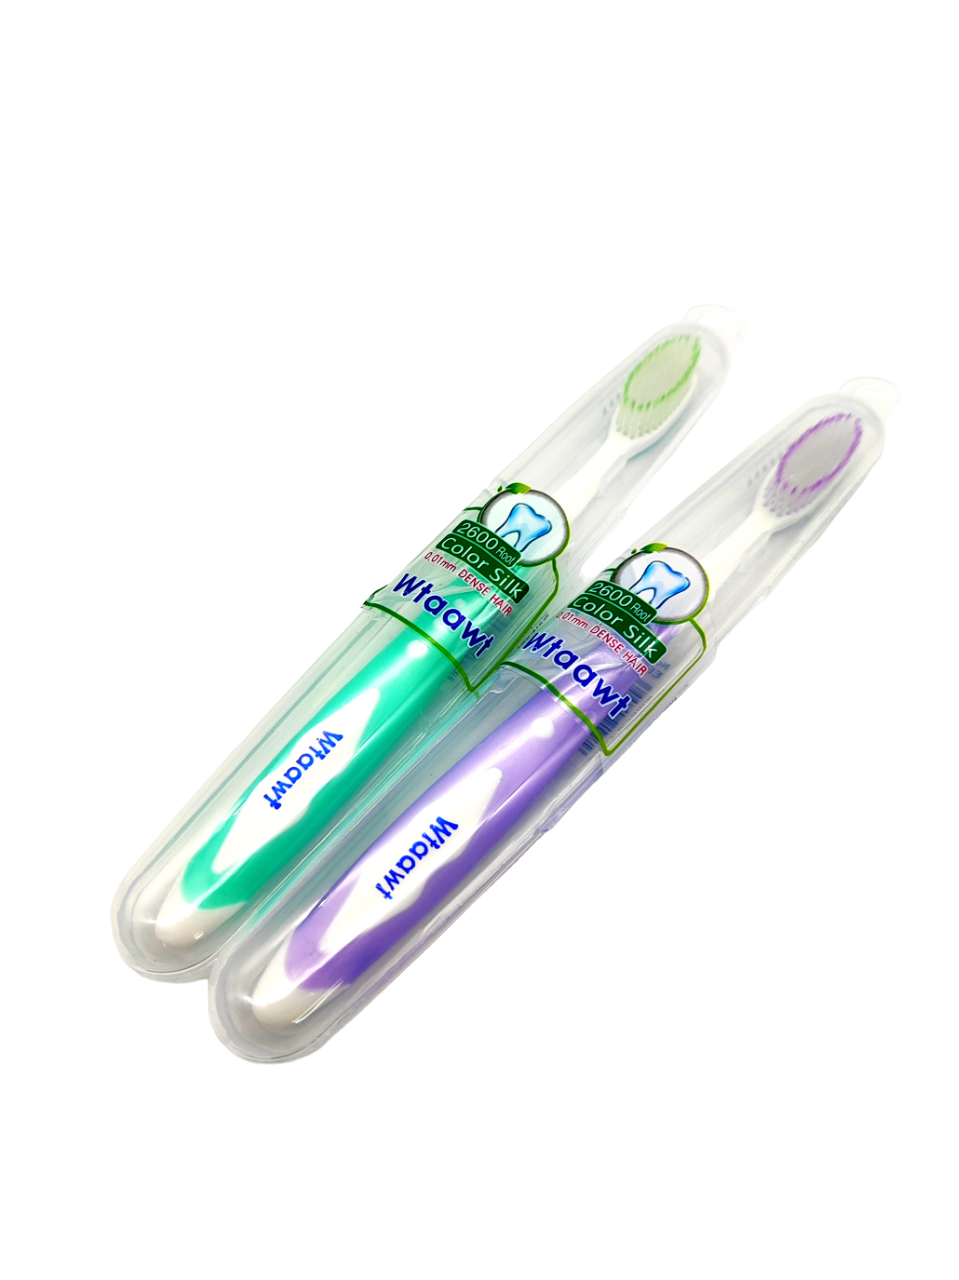 Комплект зубных щеток Wtaawt в футляре Цвет зеленый-фиолетовый 2 шт.